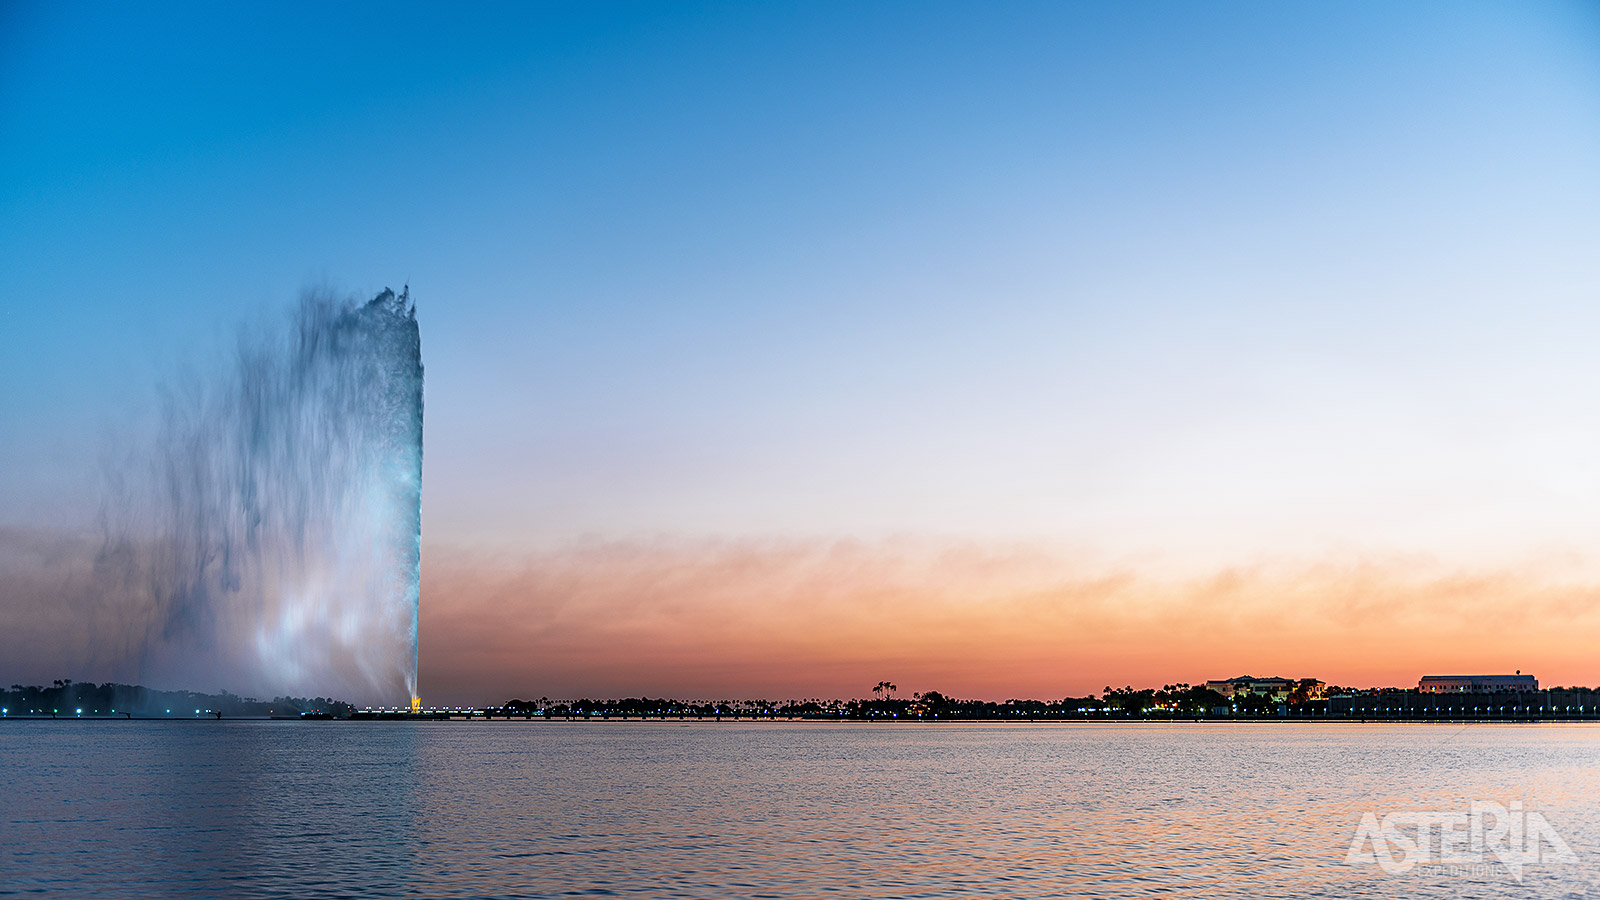 De fontein van Koning Fahd in Jeddah spuit 312 m hoog en is hiermee de hoogste fontein ter wereld